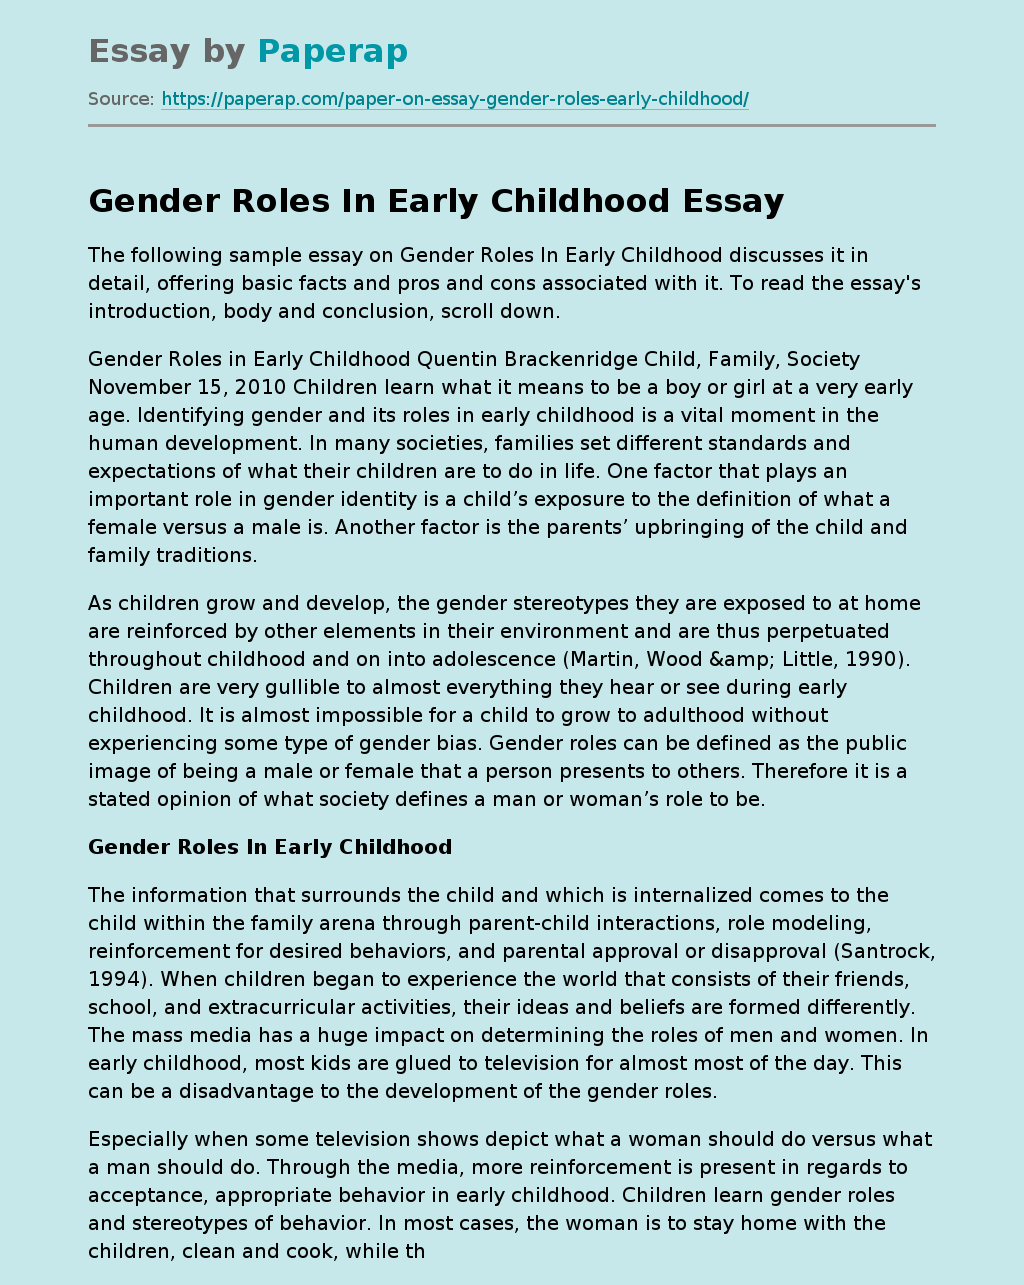 argumentative essay on gender stereotypes